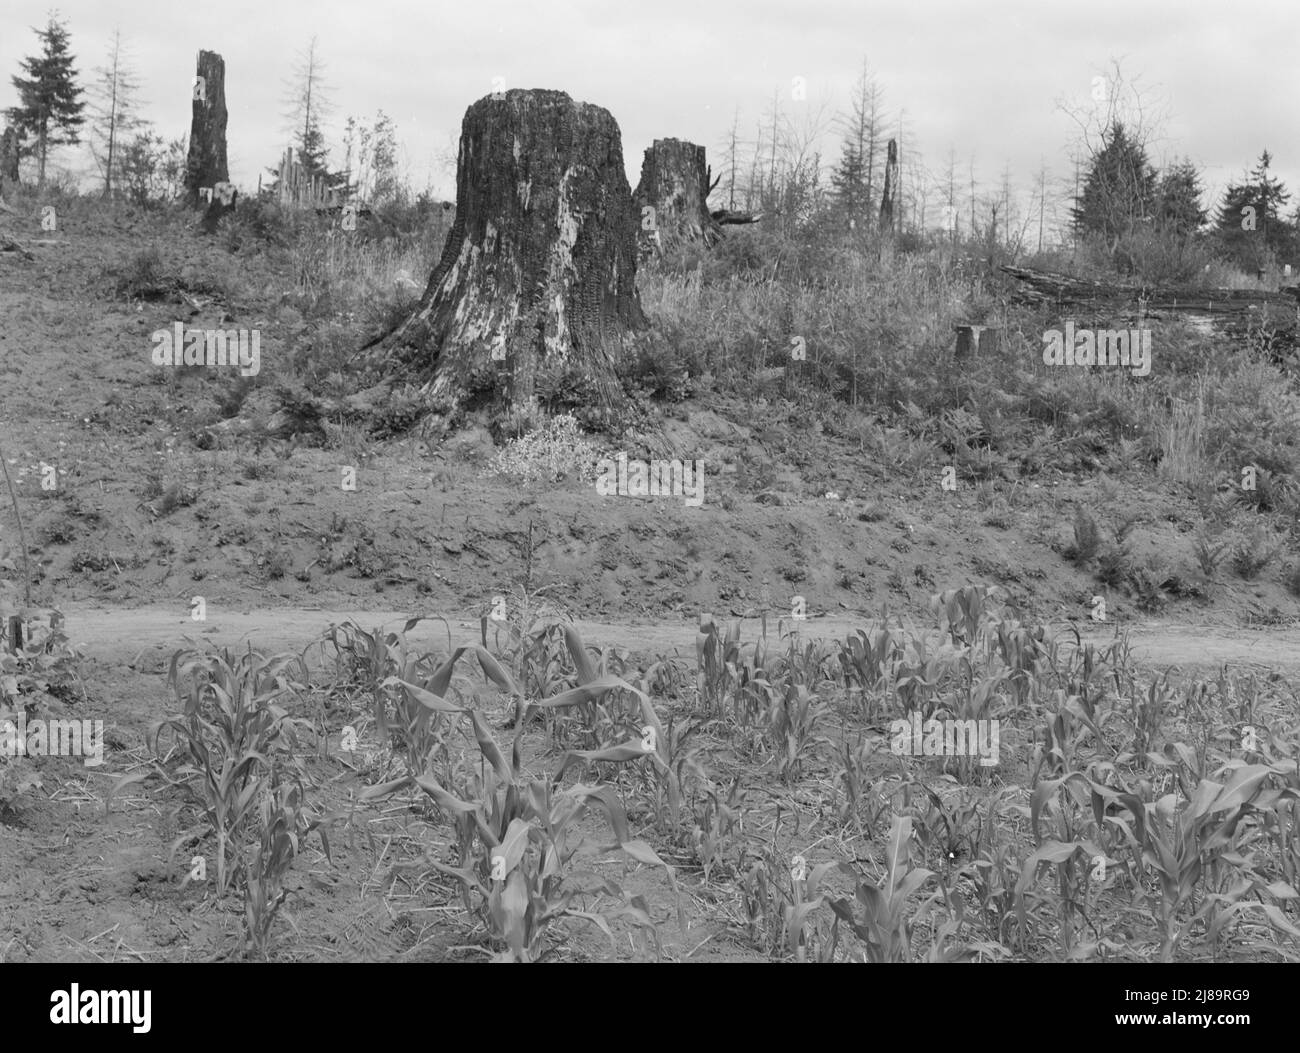 Mostra il caratere della terra nelle colline che circondano Elma. Western Wasington, Grays Harbor County, 5 km circa a nord di Elma. Foto Stock